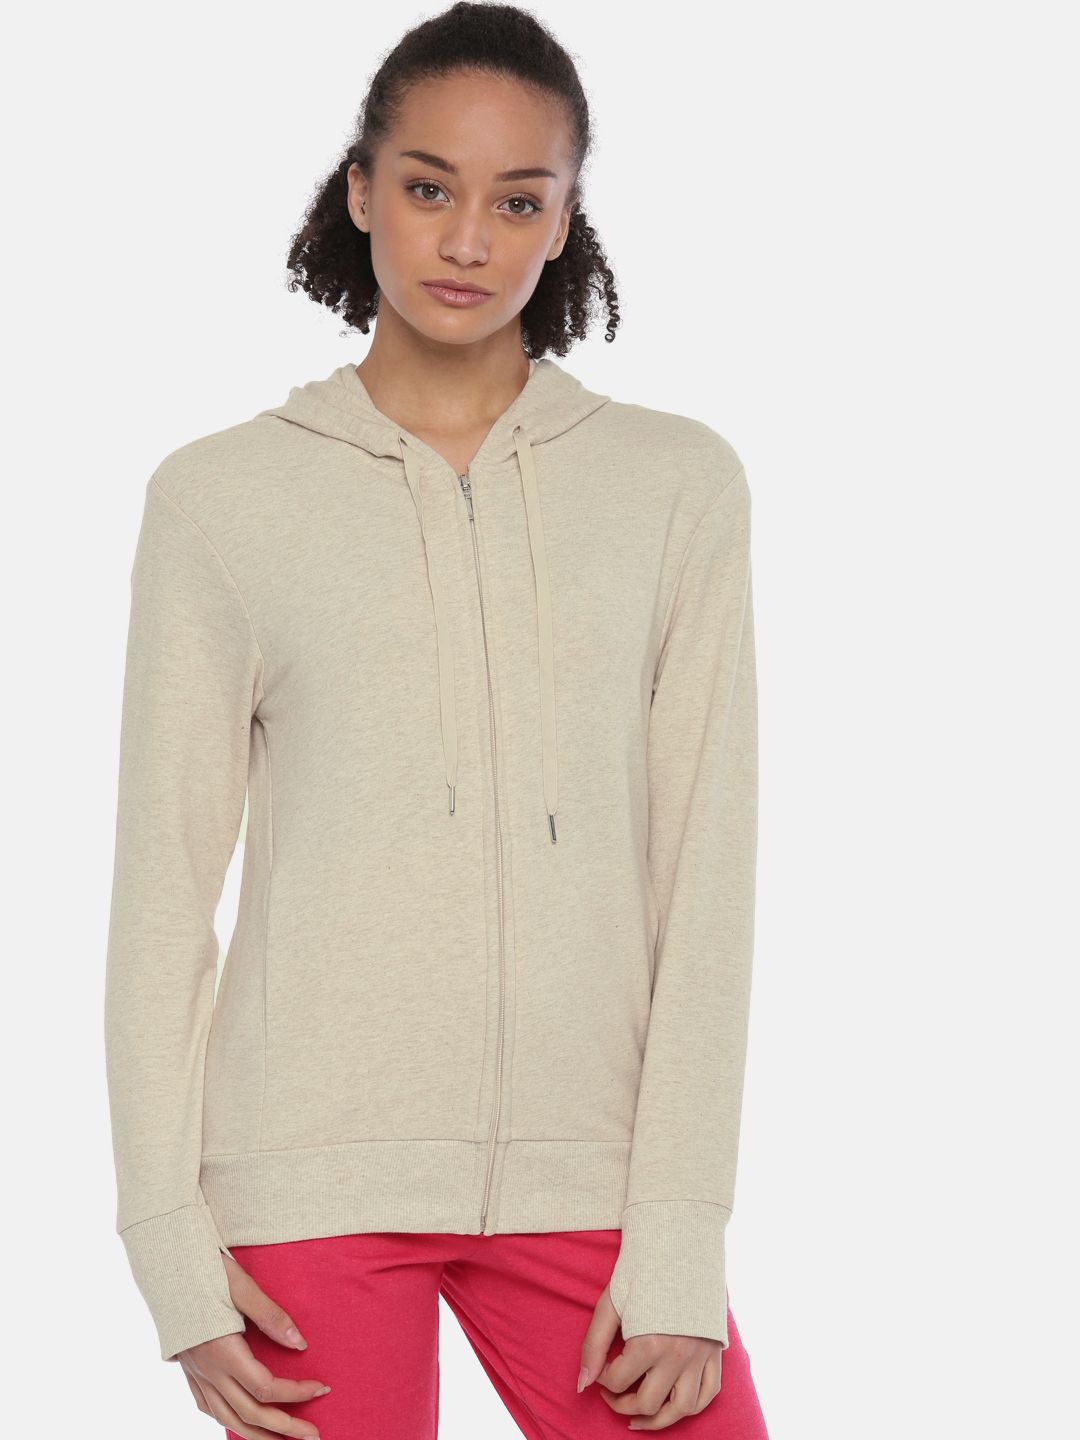 Enamor Women Beige-Coloured Solid Hooded Lounge Sweatshirt 7601101 Price in India